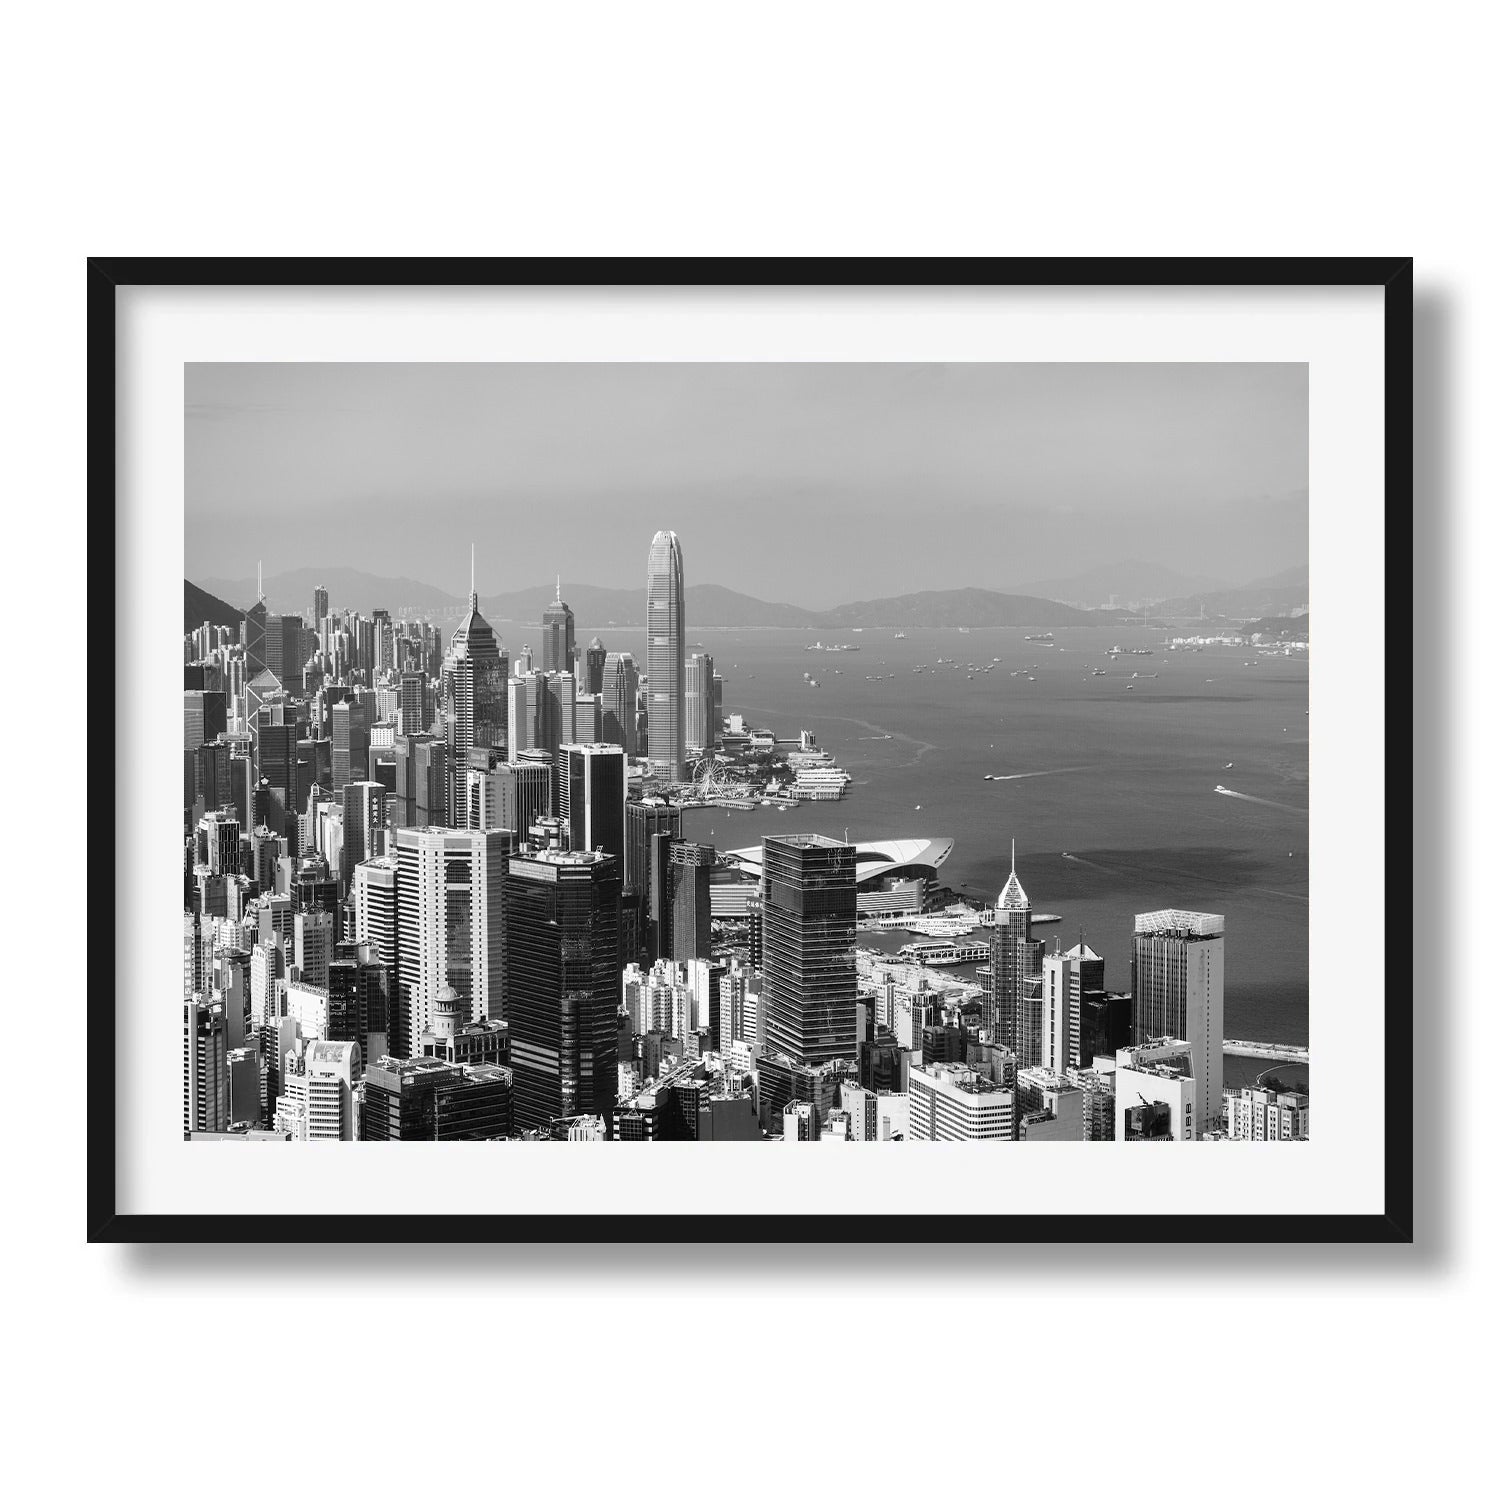 Hong Kong Central Skyline in Black & White - Peter Yan Studio